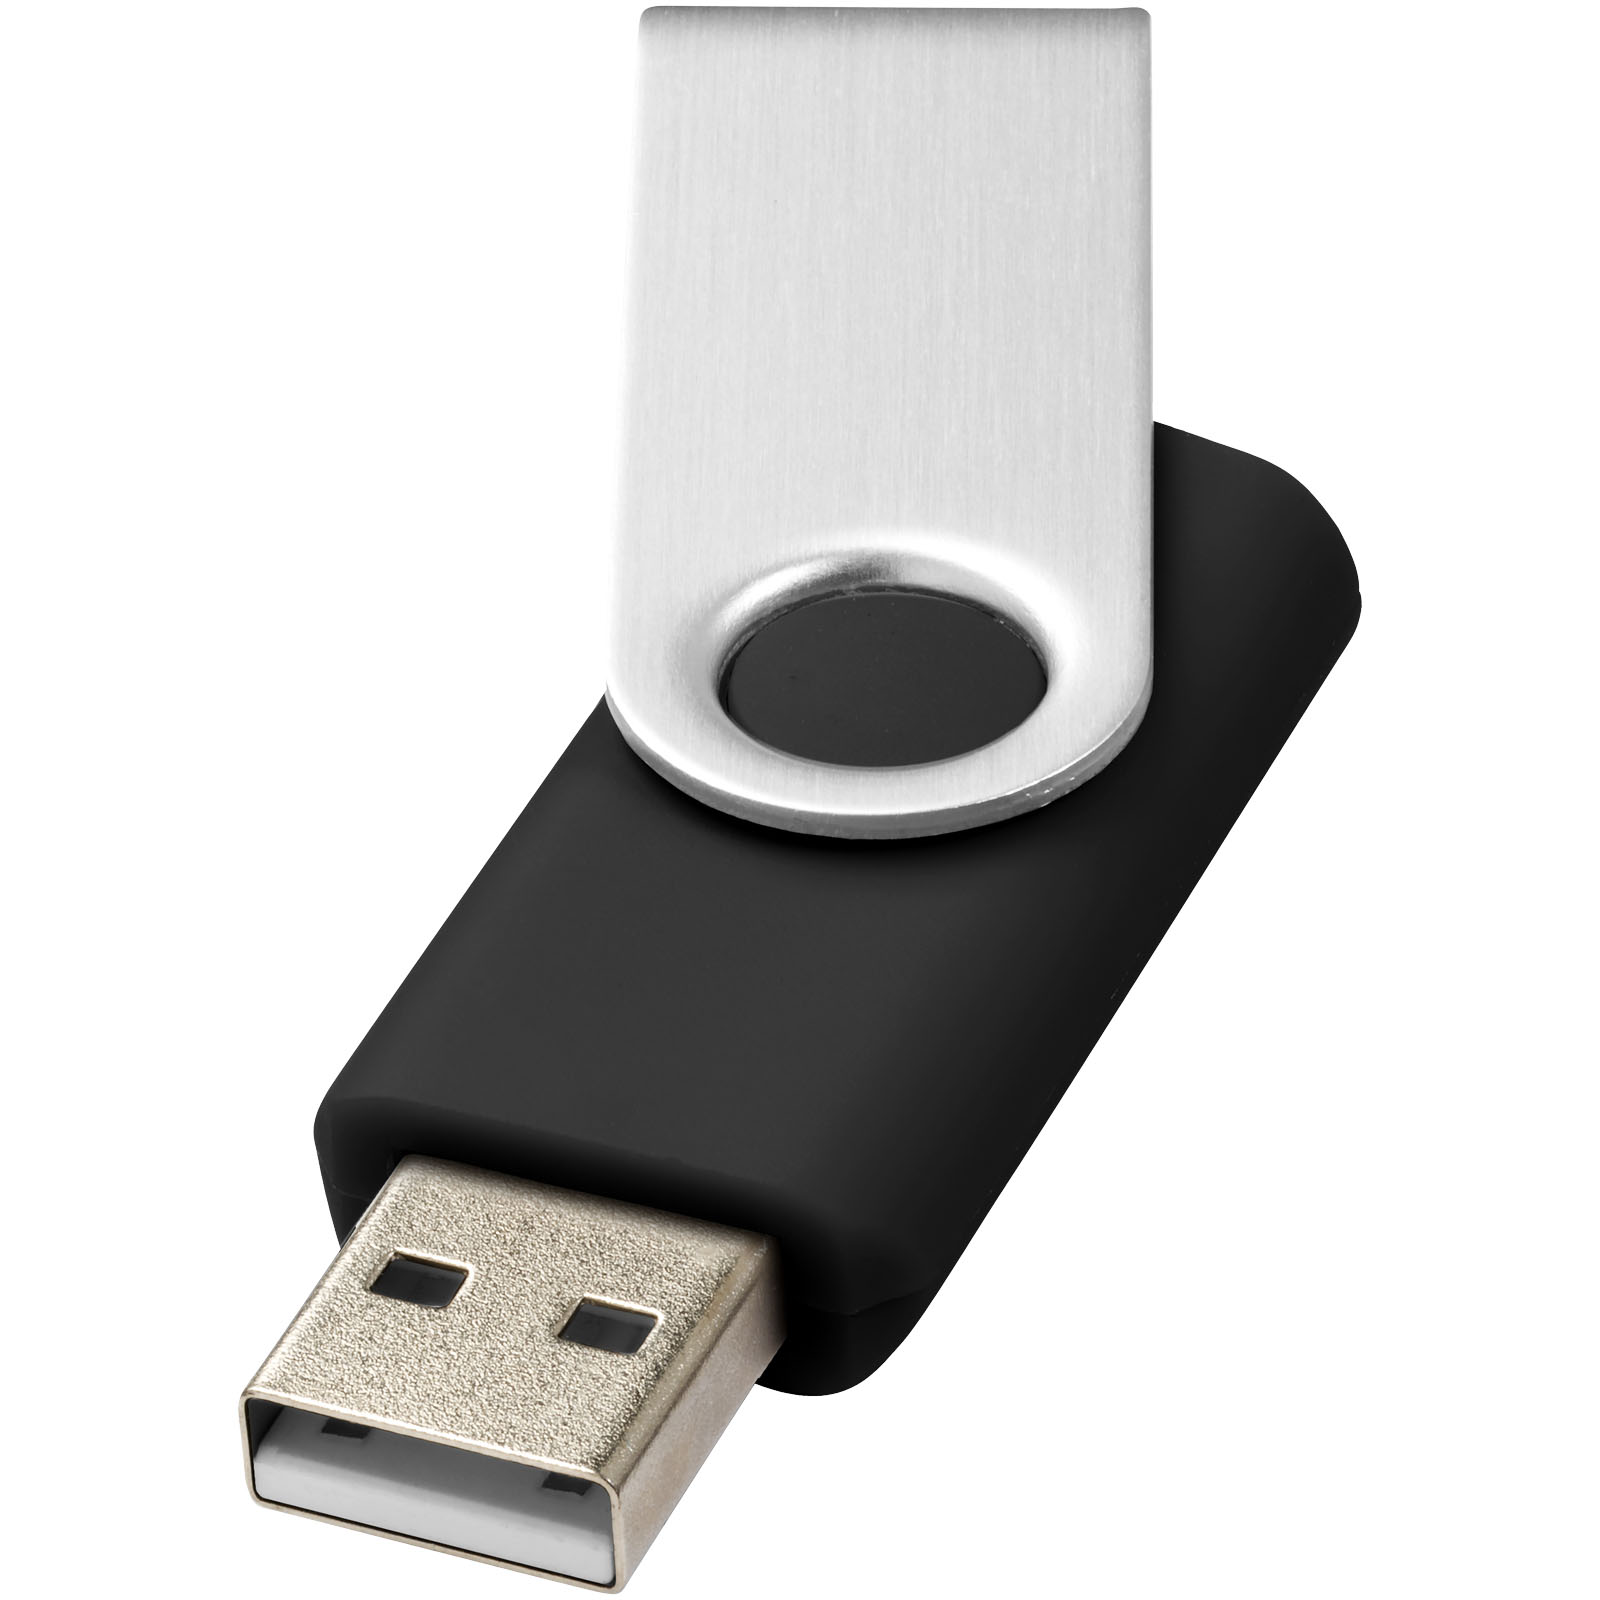 Clé USB personnalisée compatible iPhone - Goodies personnalisable